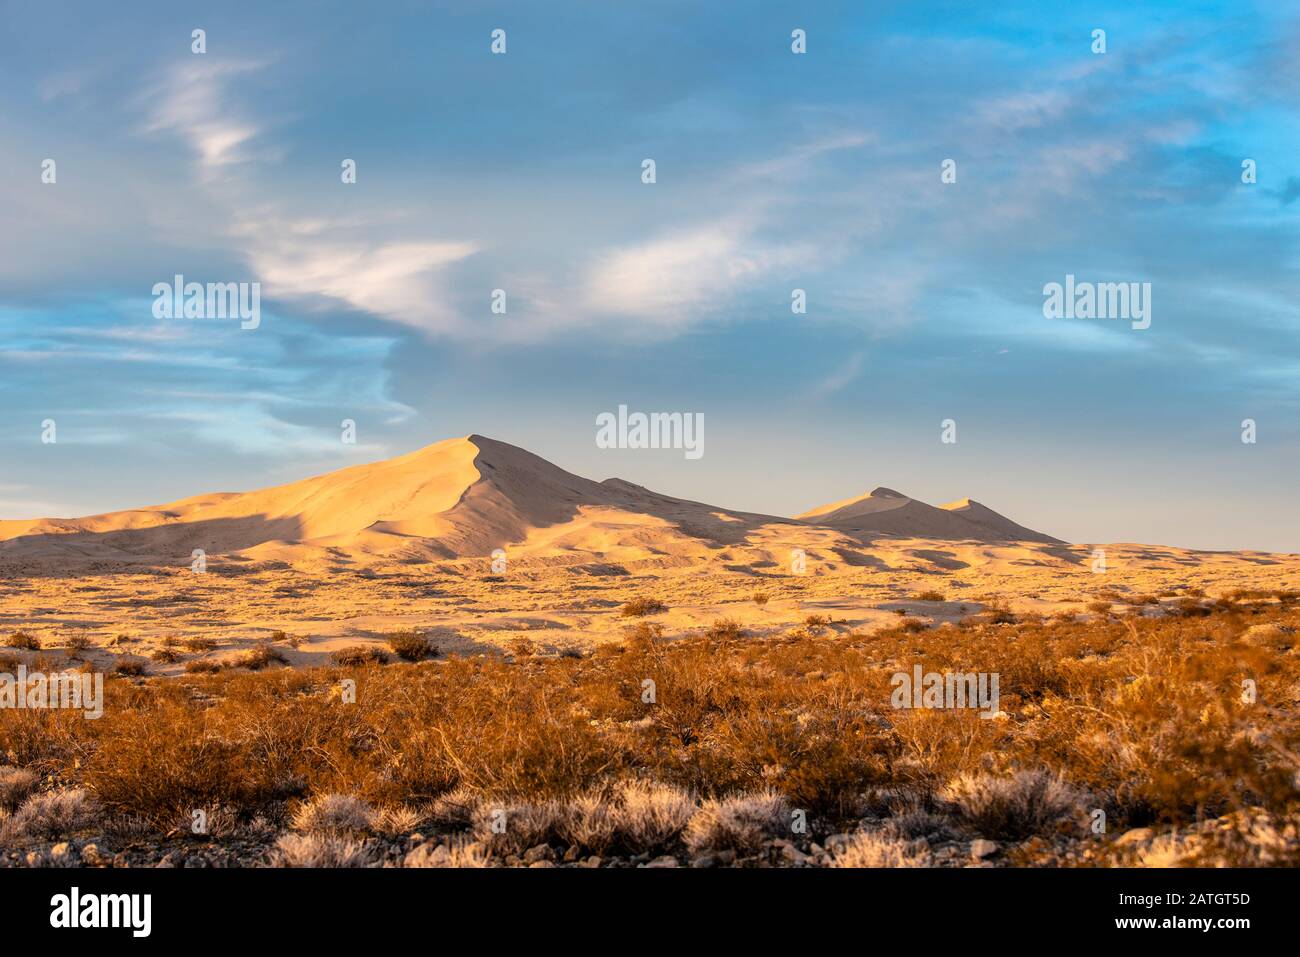 Grandes dunes de sable situées dans la Réserve nationale de Mojave en Californie. La lumière naturelle projette des ombres profondes sur ce magnifique paysage désertique Banque D'Images